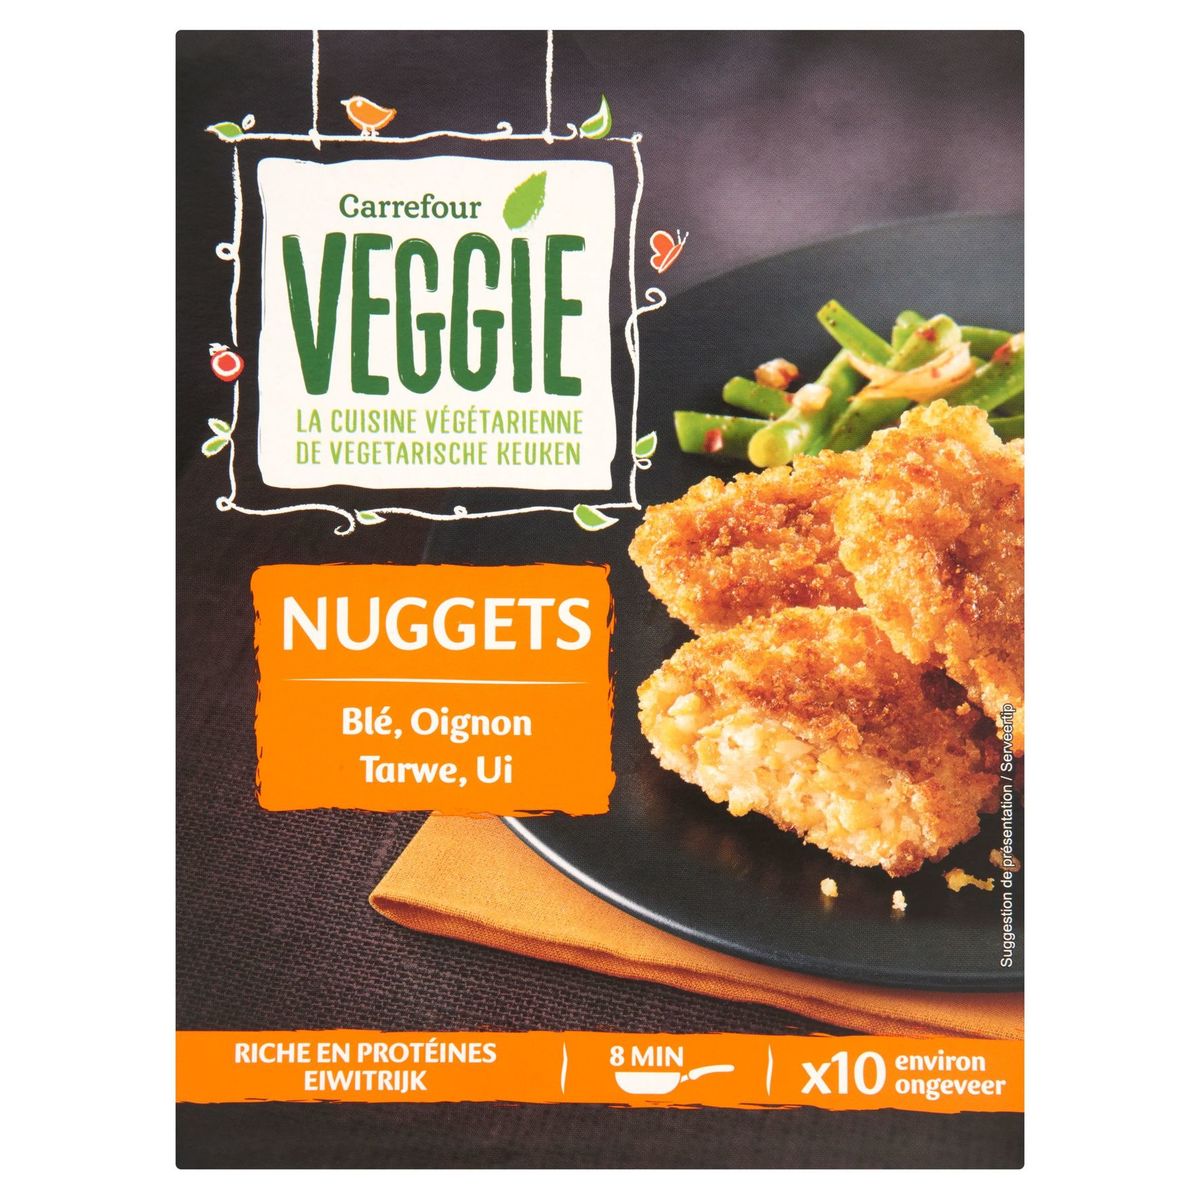 Carrefour Veggie Nuggets Blé, Oignon 200 g